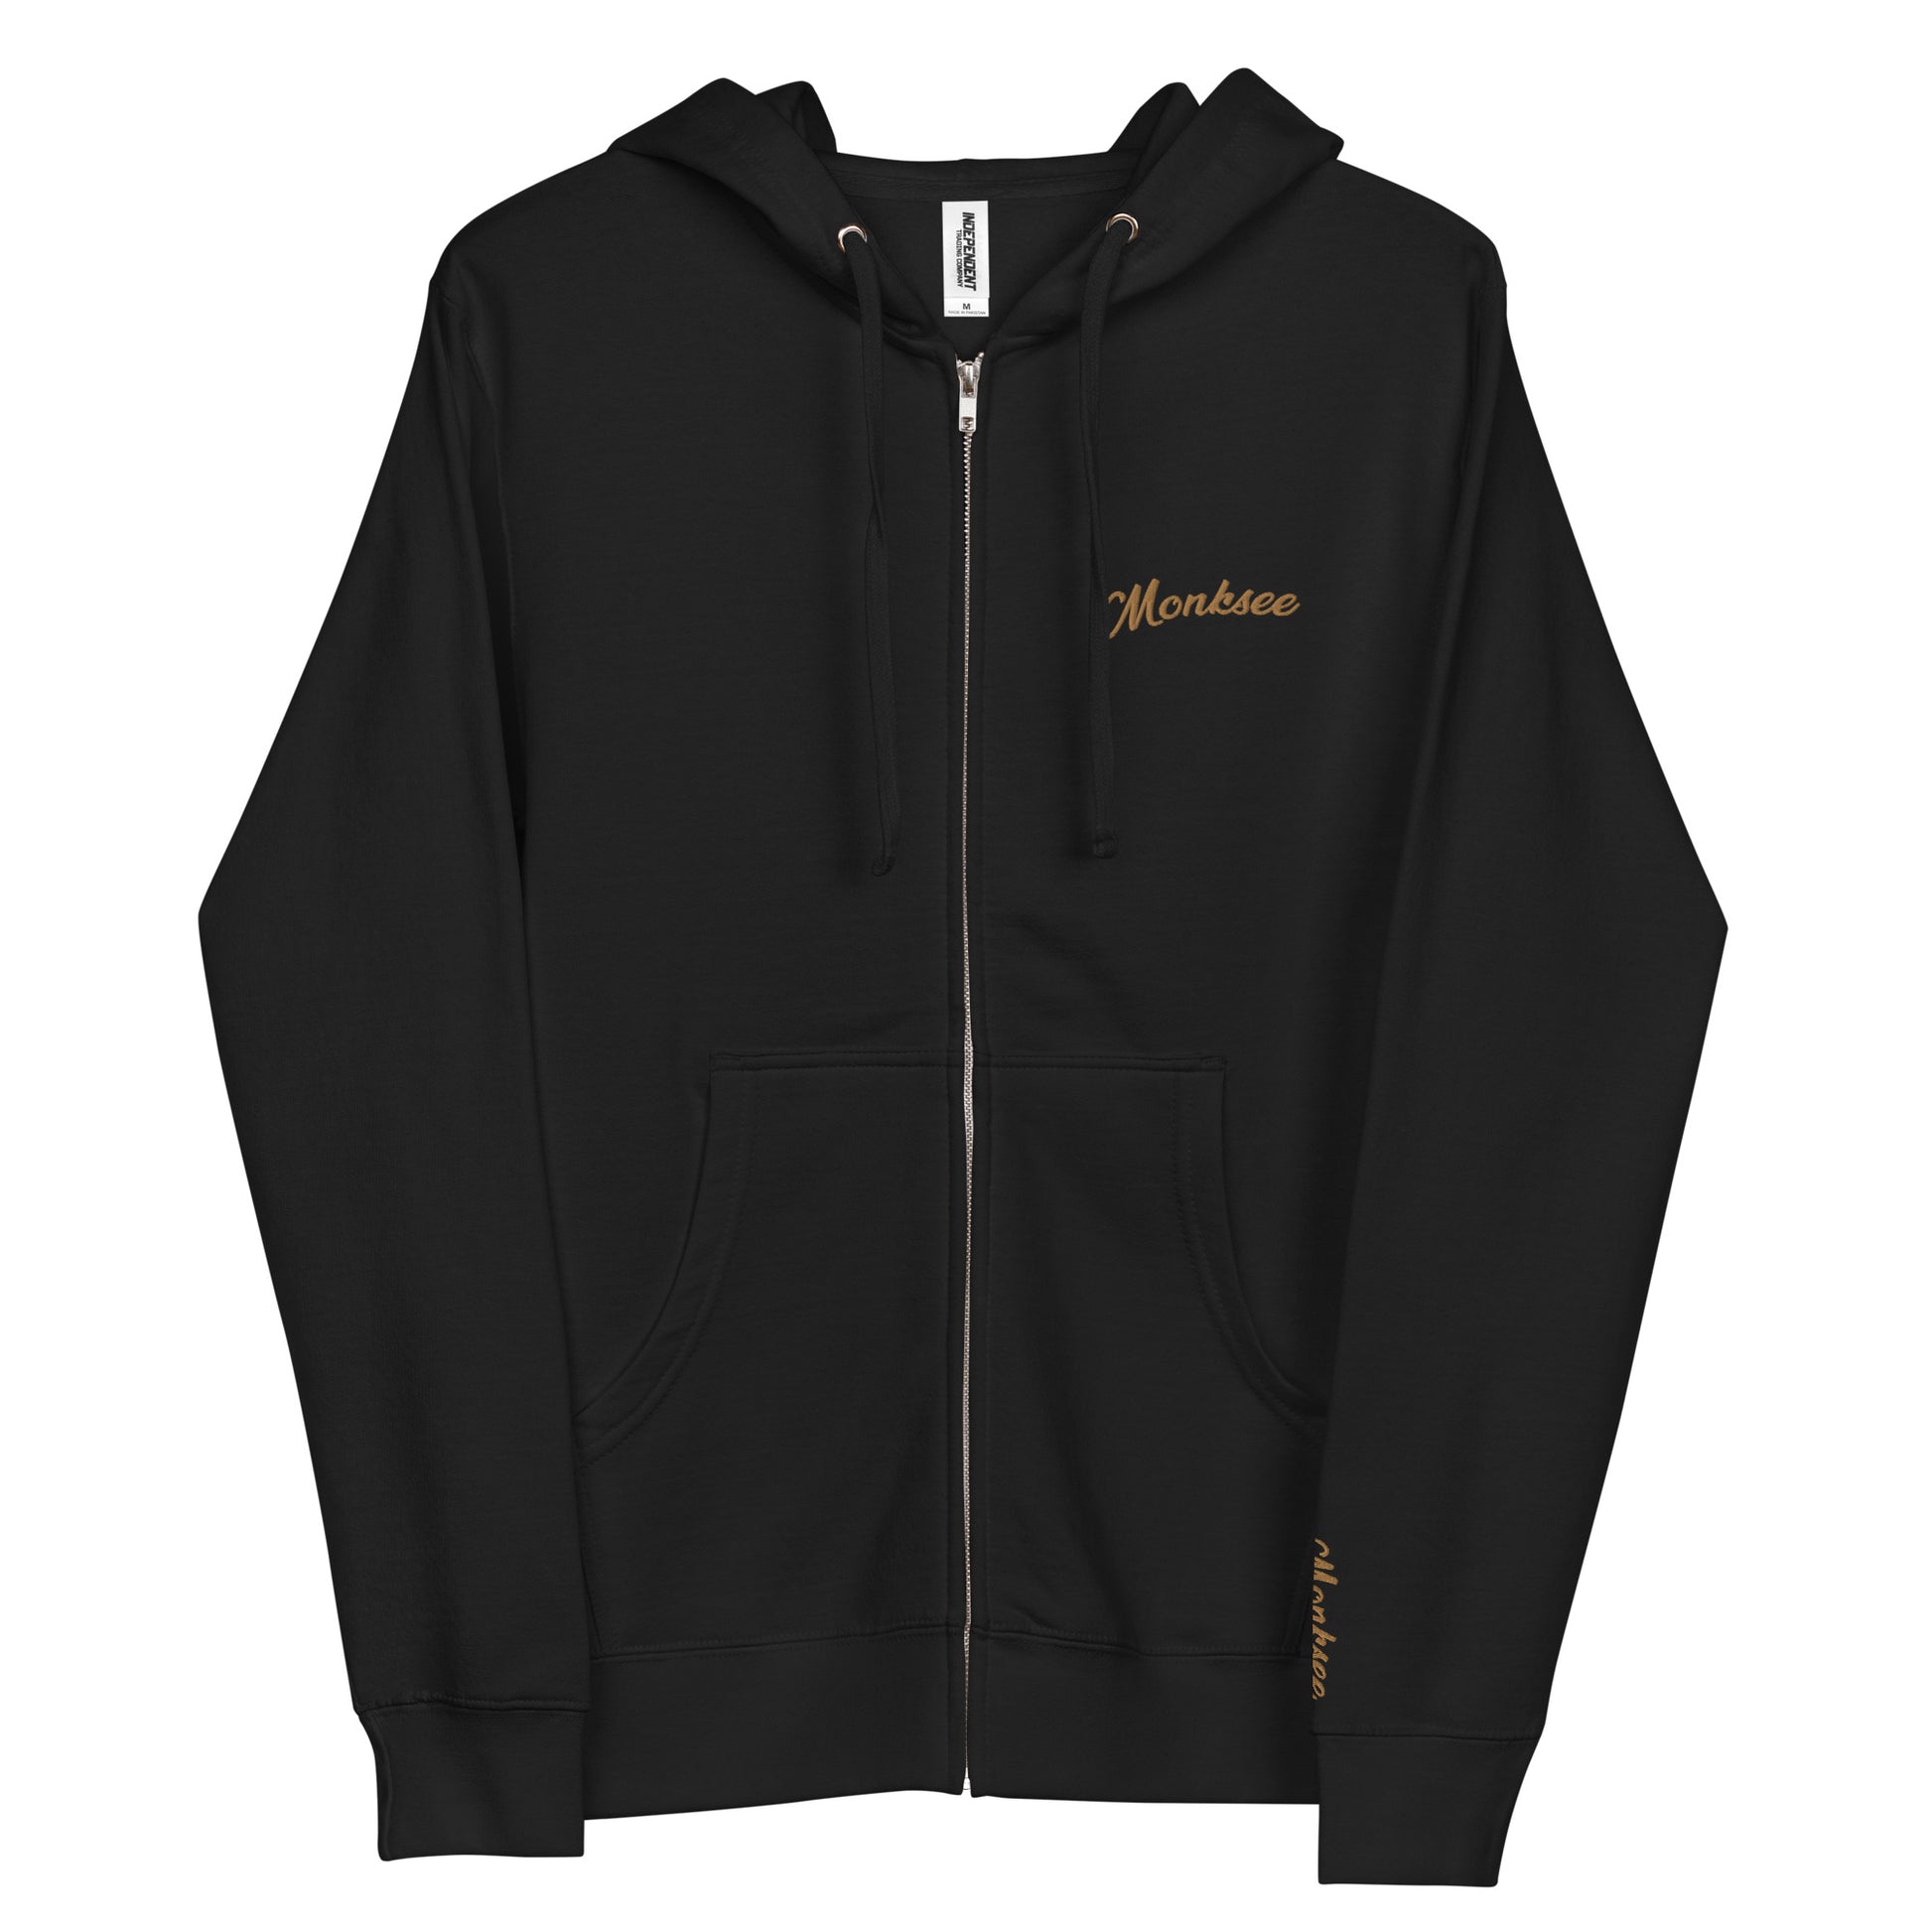 Gold Digger fleece zip up hoodie.